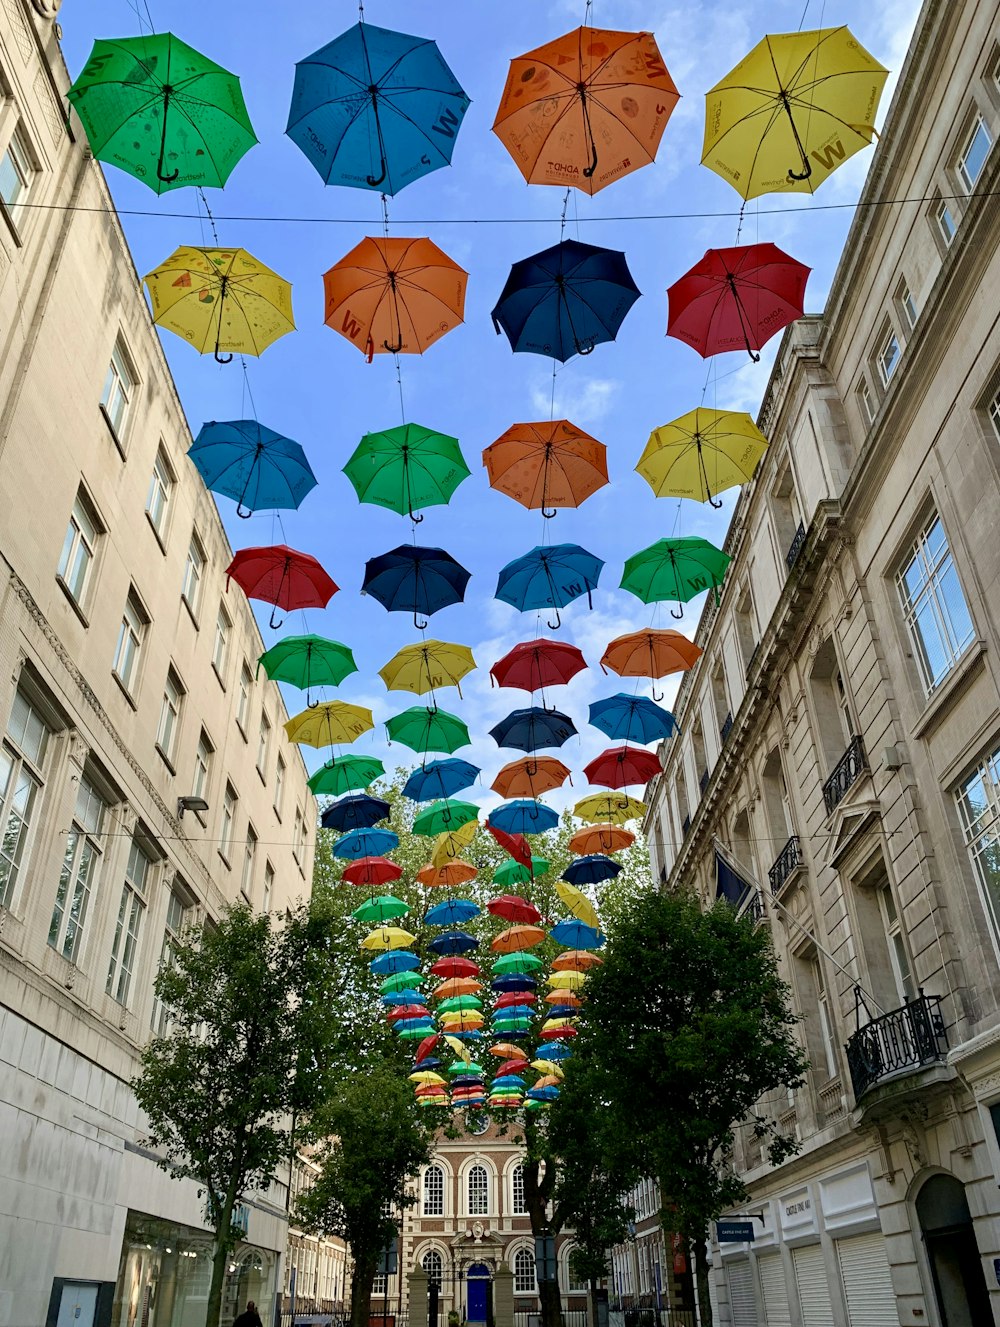 paraguas de colores variados bajo el cielo azul